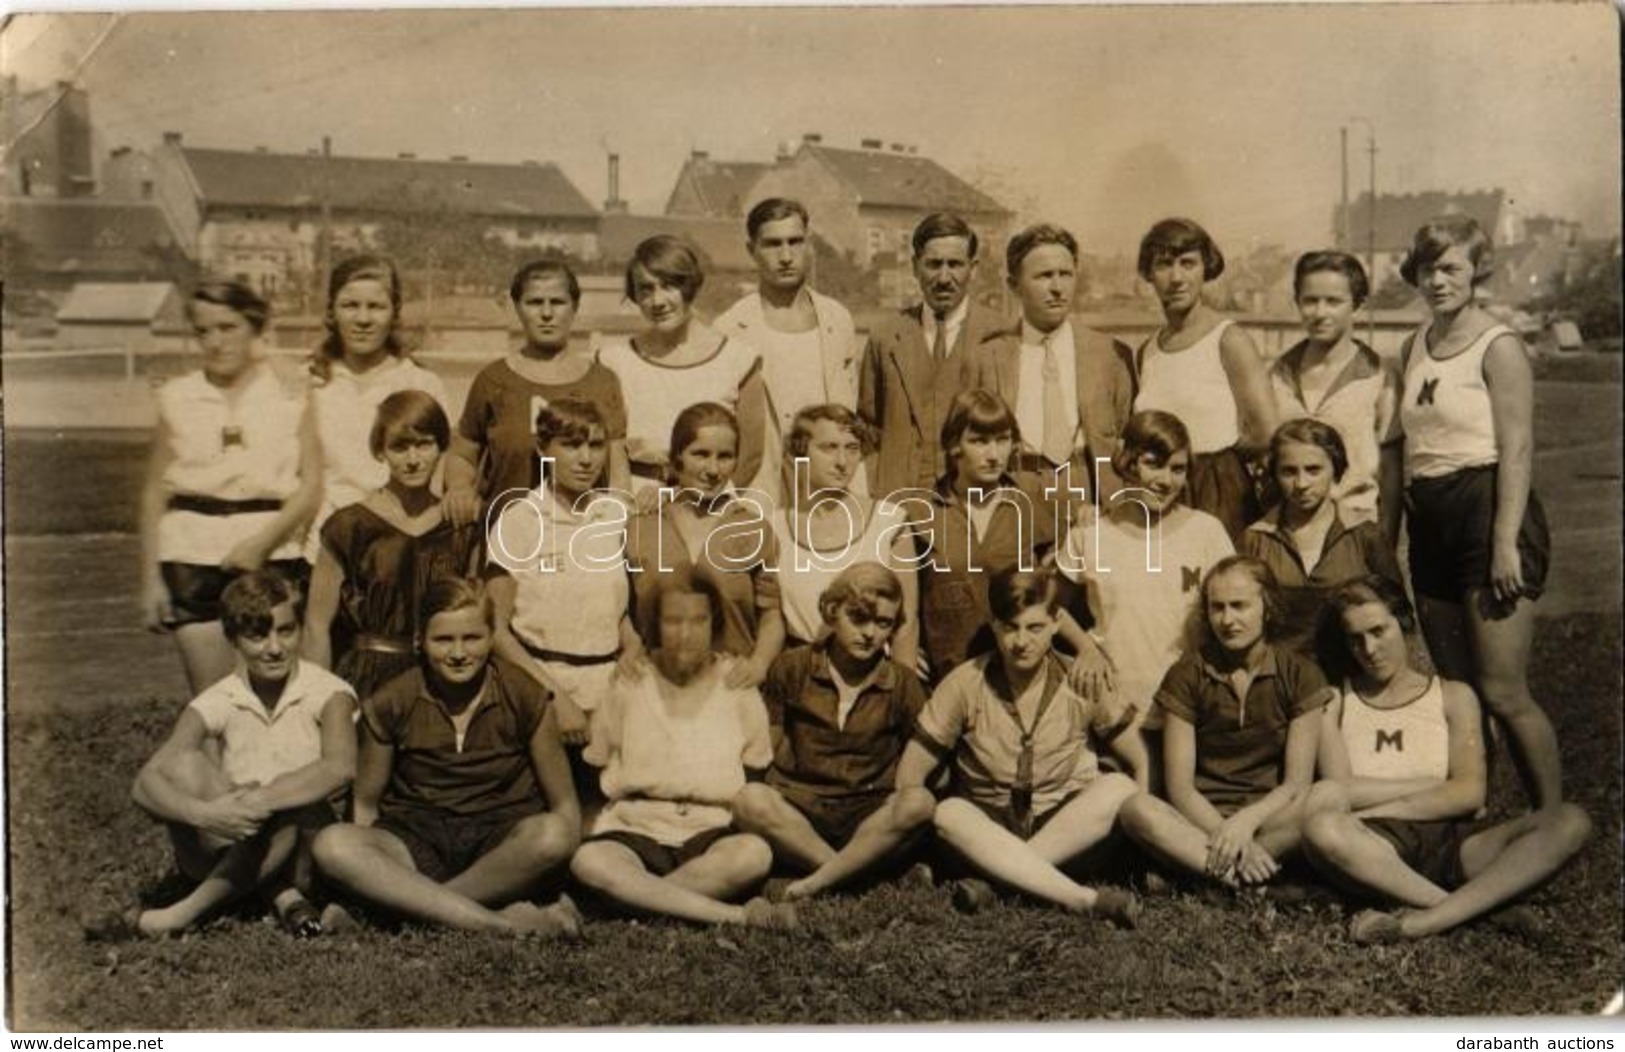 * T2/T3 1927 Női Atlétikai Verseny, Csoportkép / Women's Athletics Competition, Gorup Photo. (EK) - Non Classés